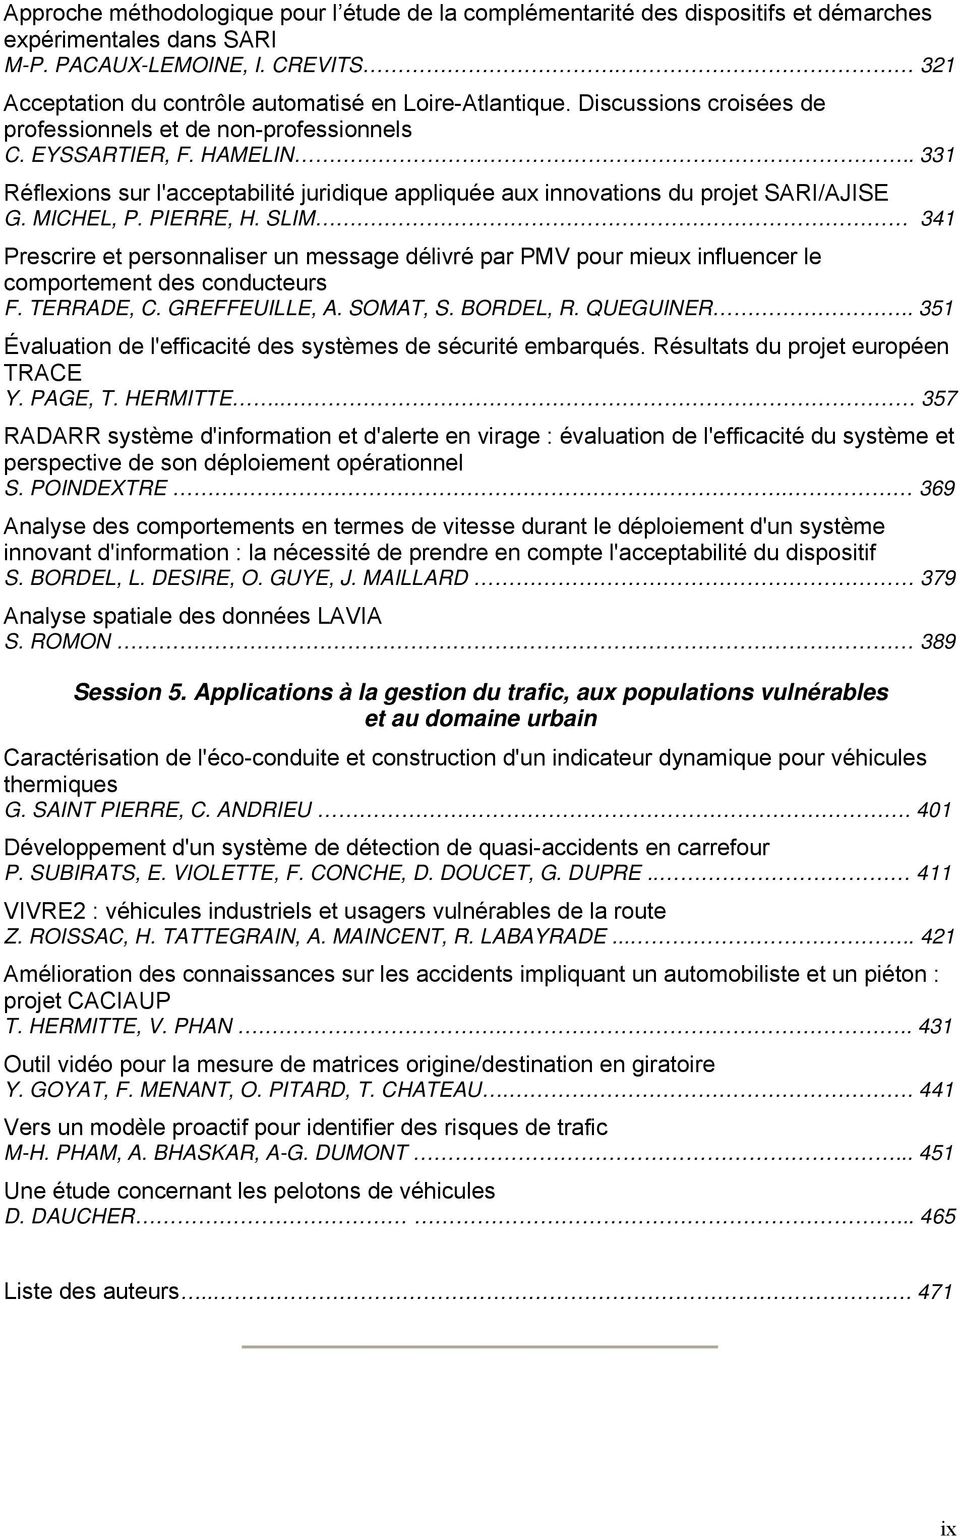 . 331 Réflexions sur l'acceptabilité juridique appliquée aux innovations du projet SARI/AJISE G. MICHEL, P. PIERRE, H. SLIM.